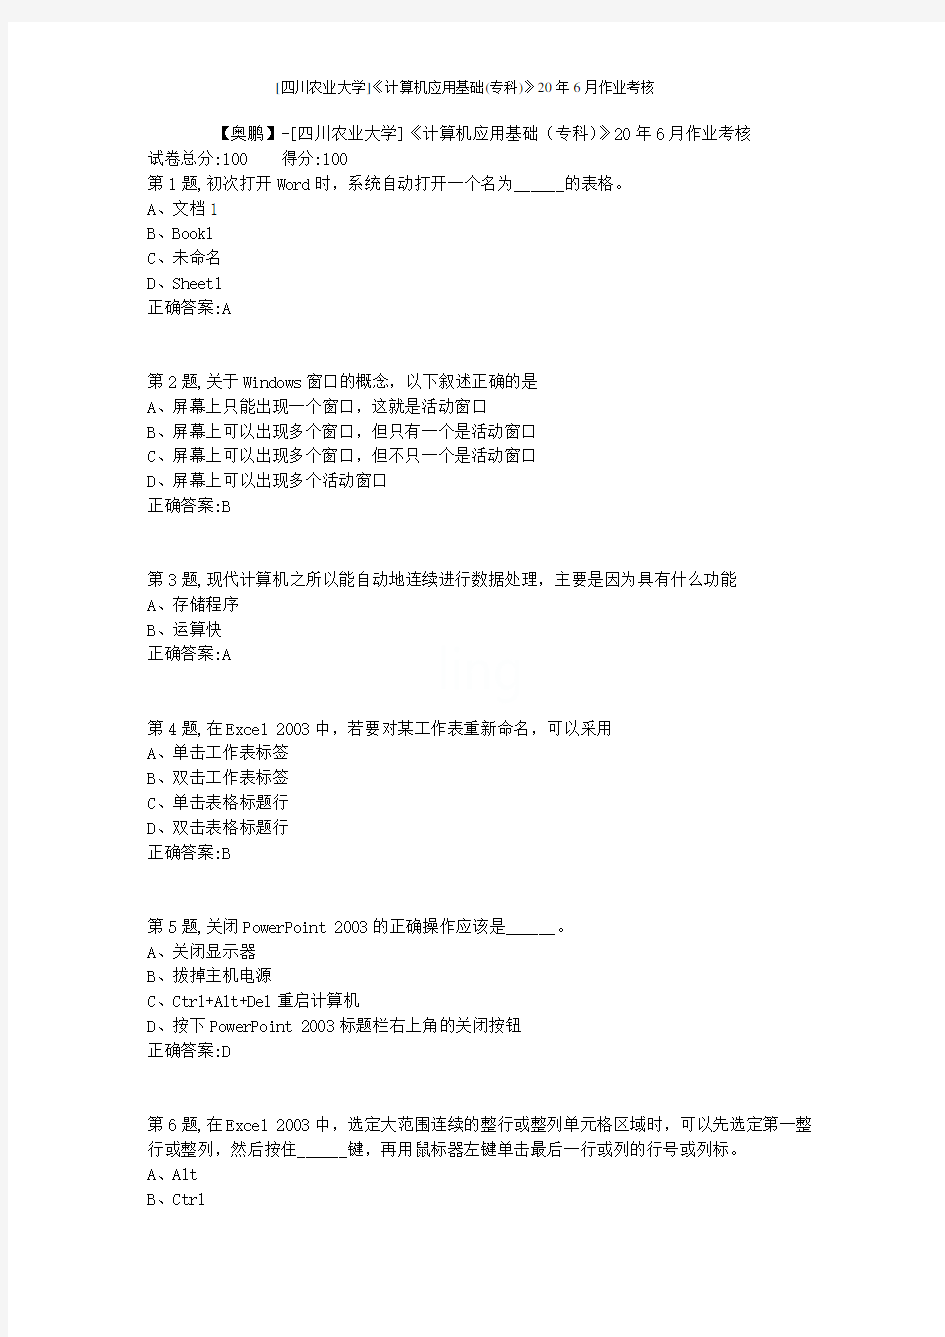 [四川农业大学]《计算机应用基础(专科)》20年6月作业考核